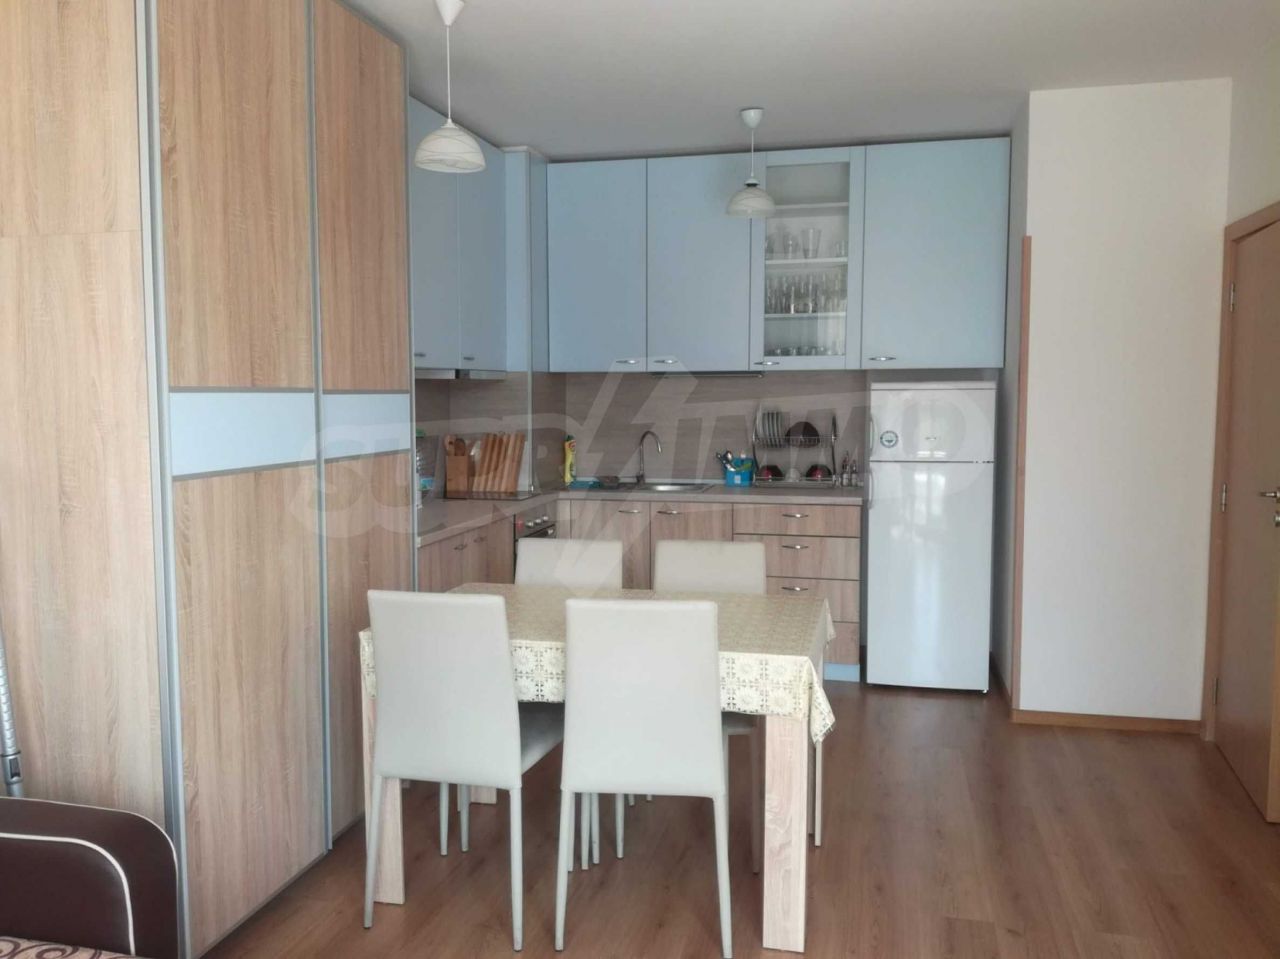 Apartment in Varna, Bulgaria, 58 sq.m - picture 1